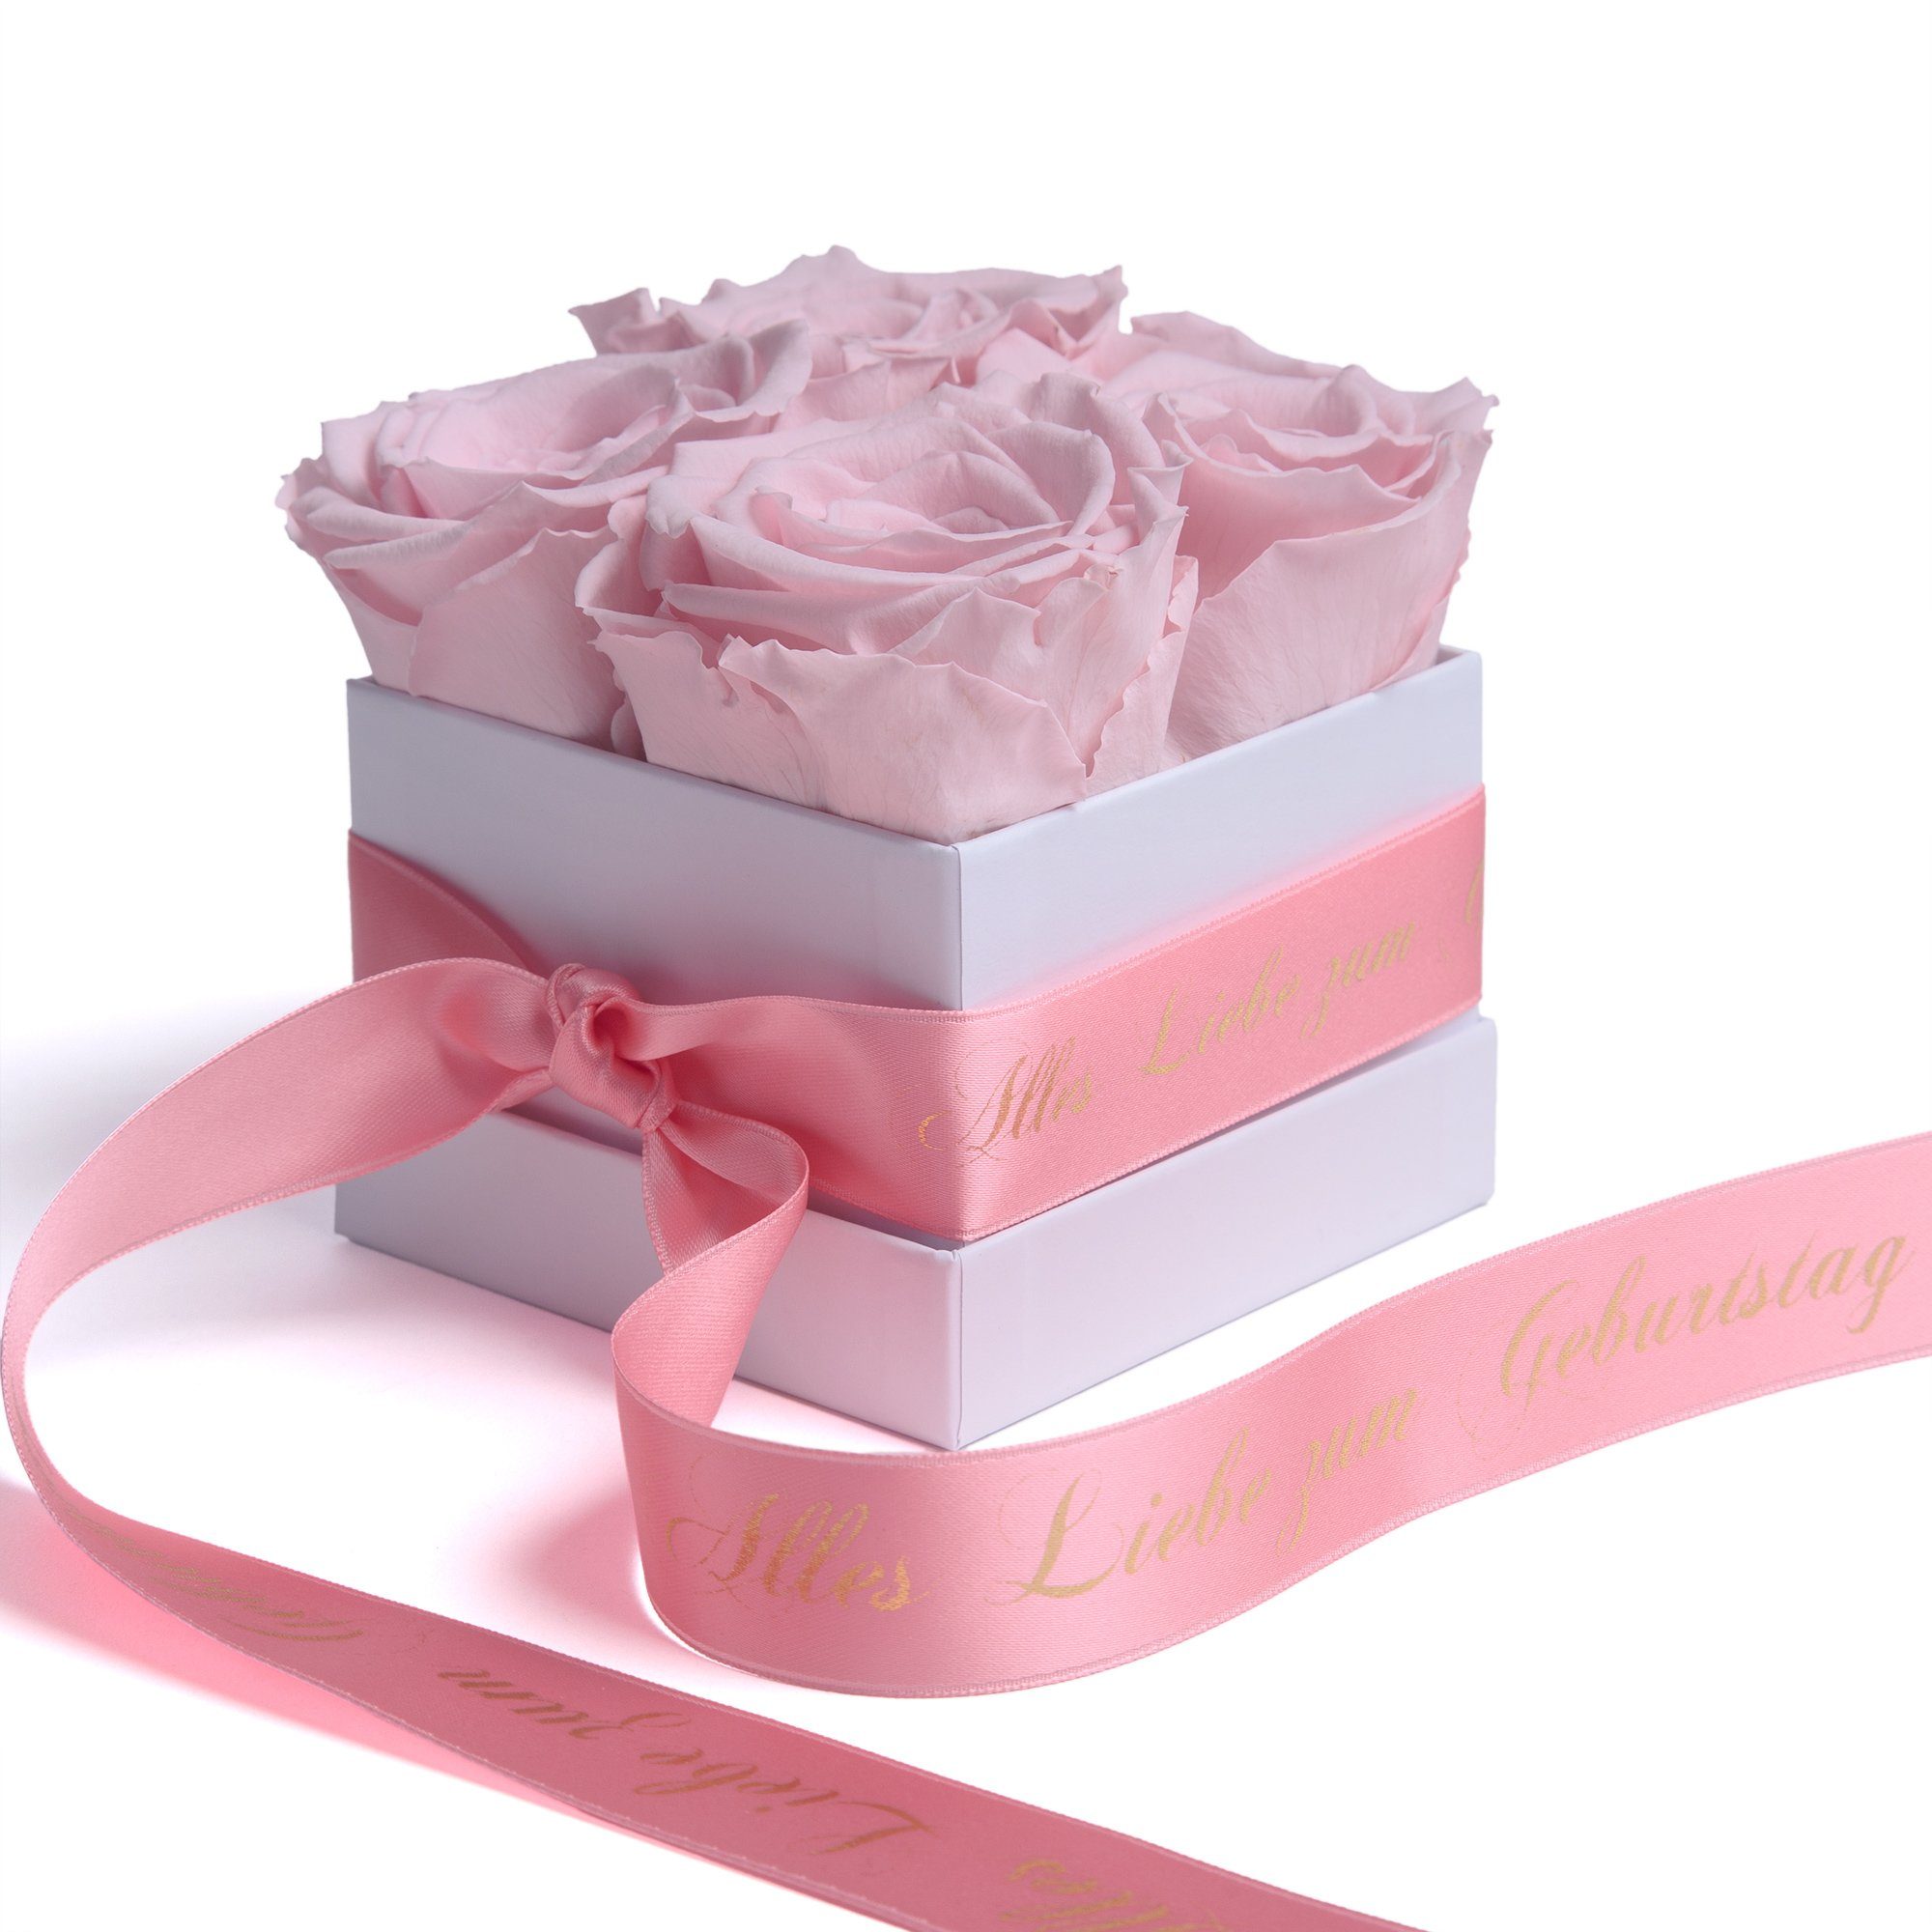 ROSEMARIE SCHULZ Heidelberg Dekoobjekt Infinity Liebe Rose Geburtstag bis Alles 3 haltbar Blumen Rosenbox rosa Echte zu Geschenk, zum Jahre